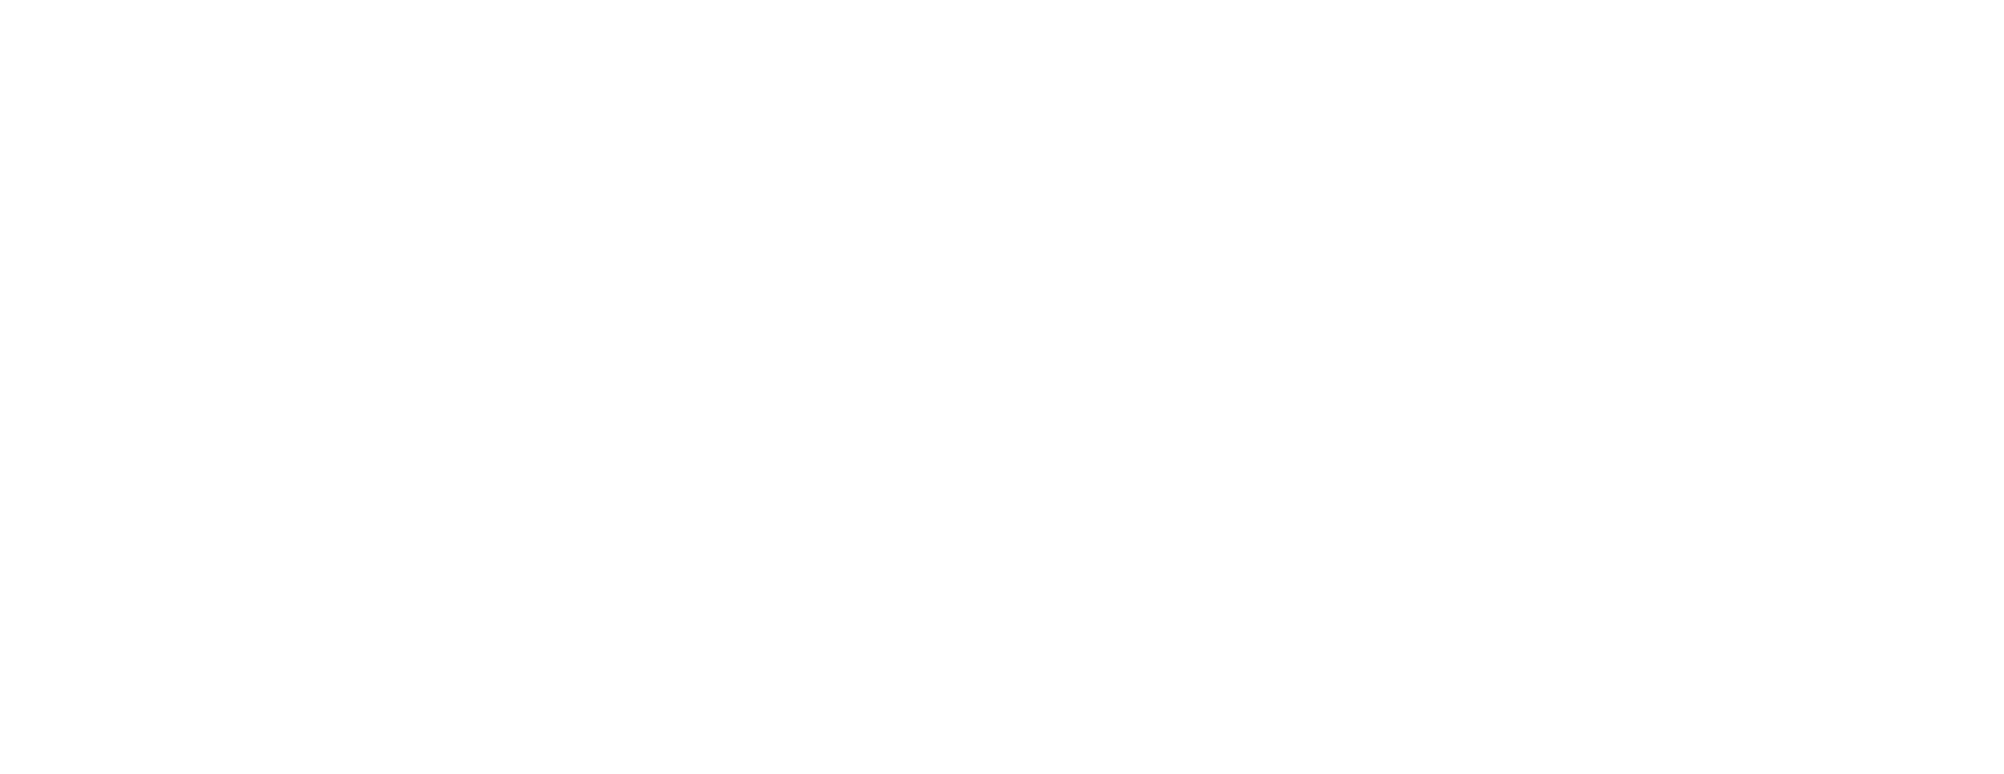 Garlic B2B